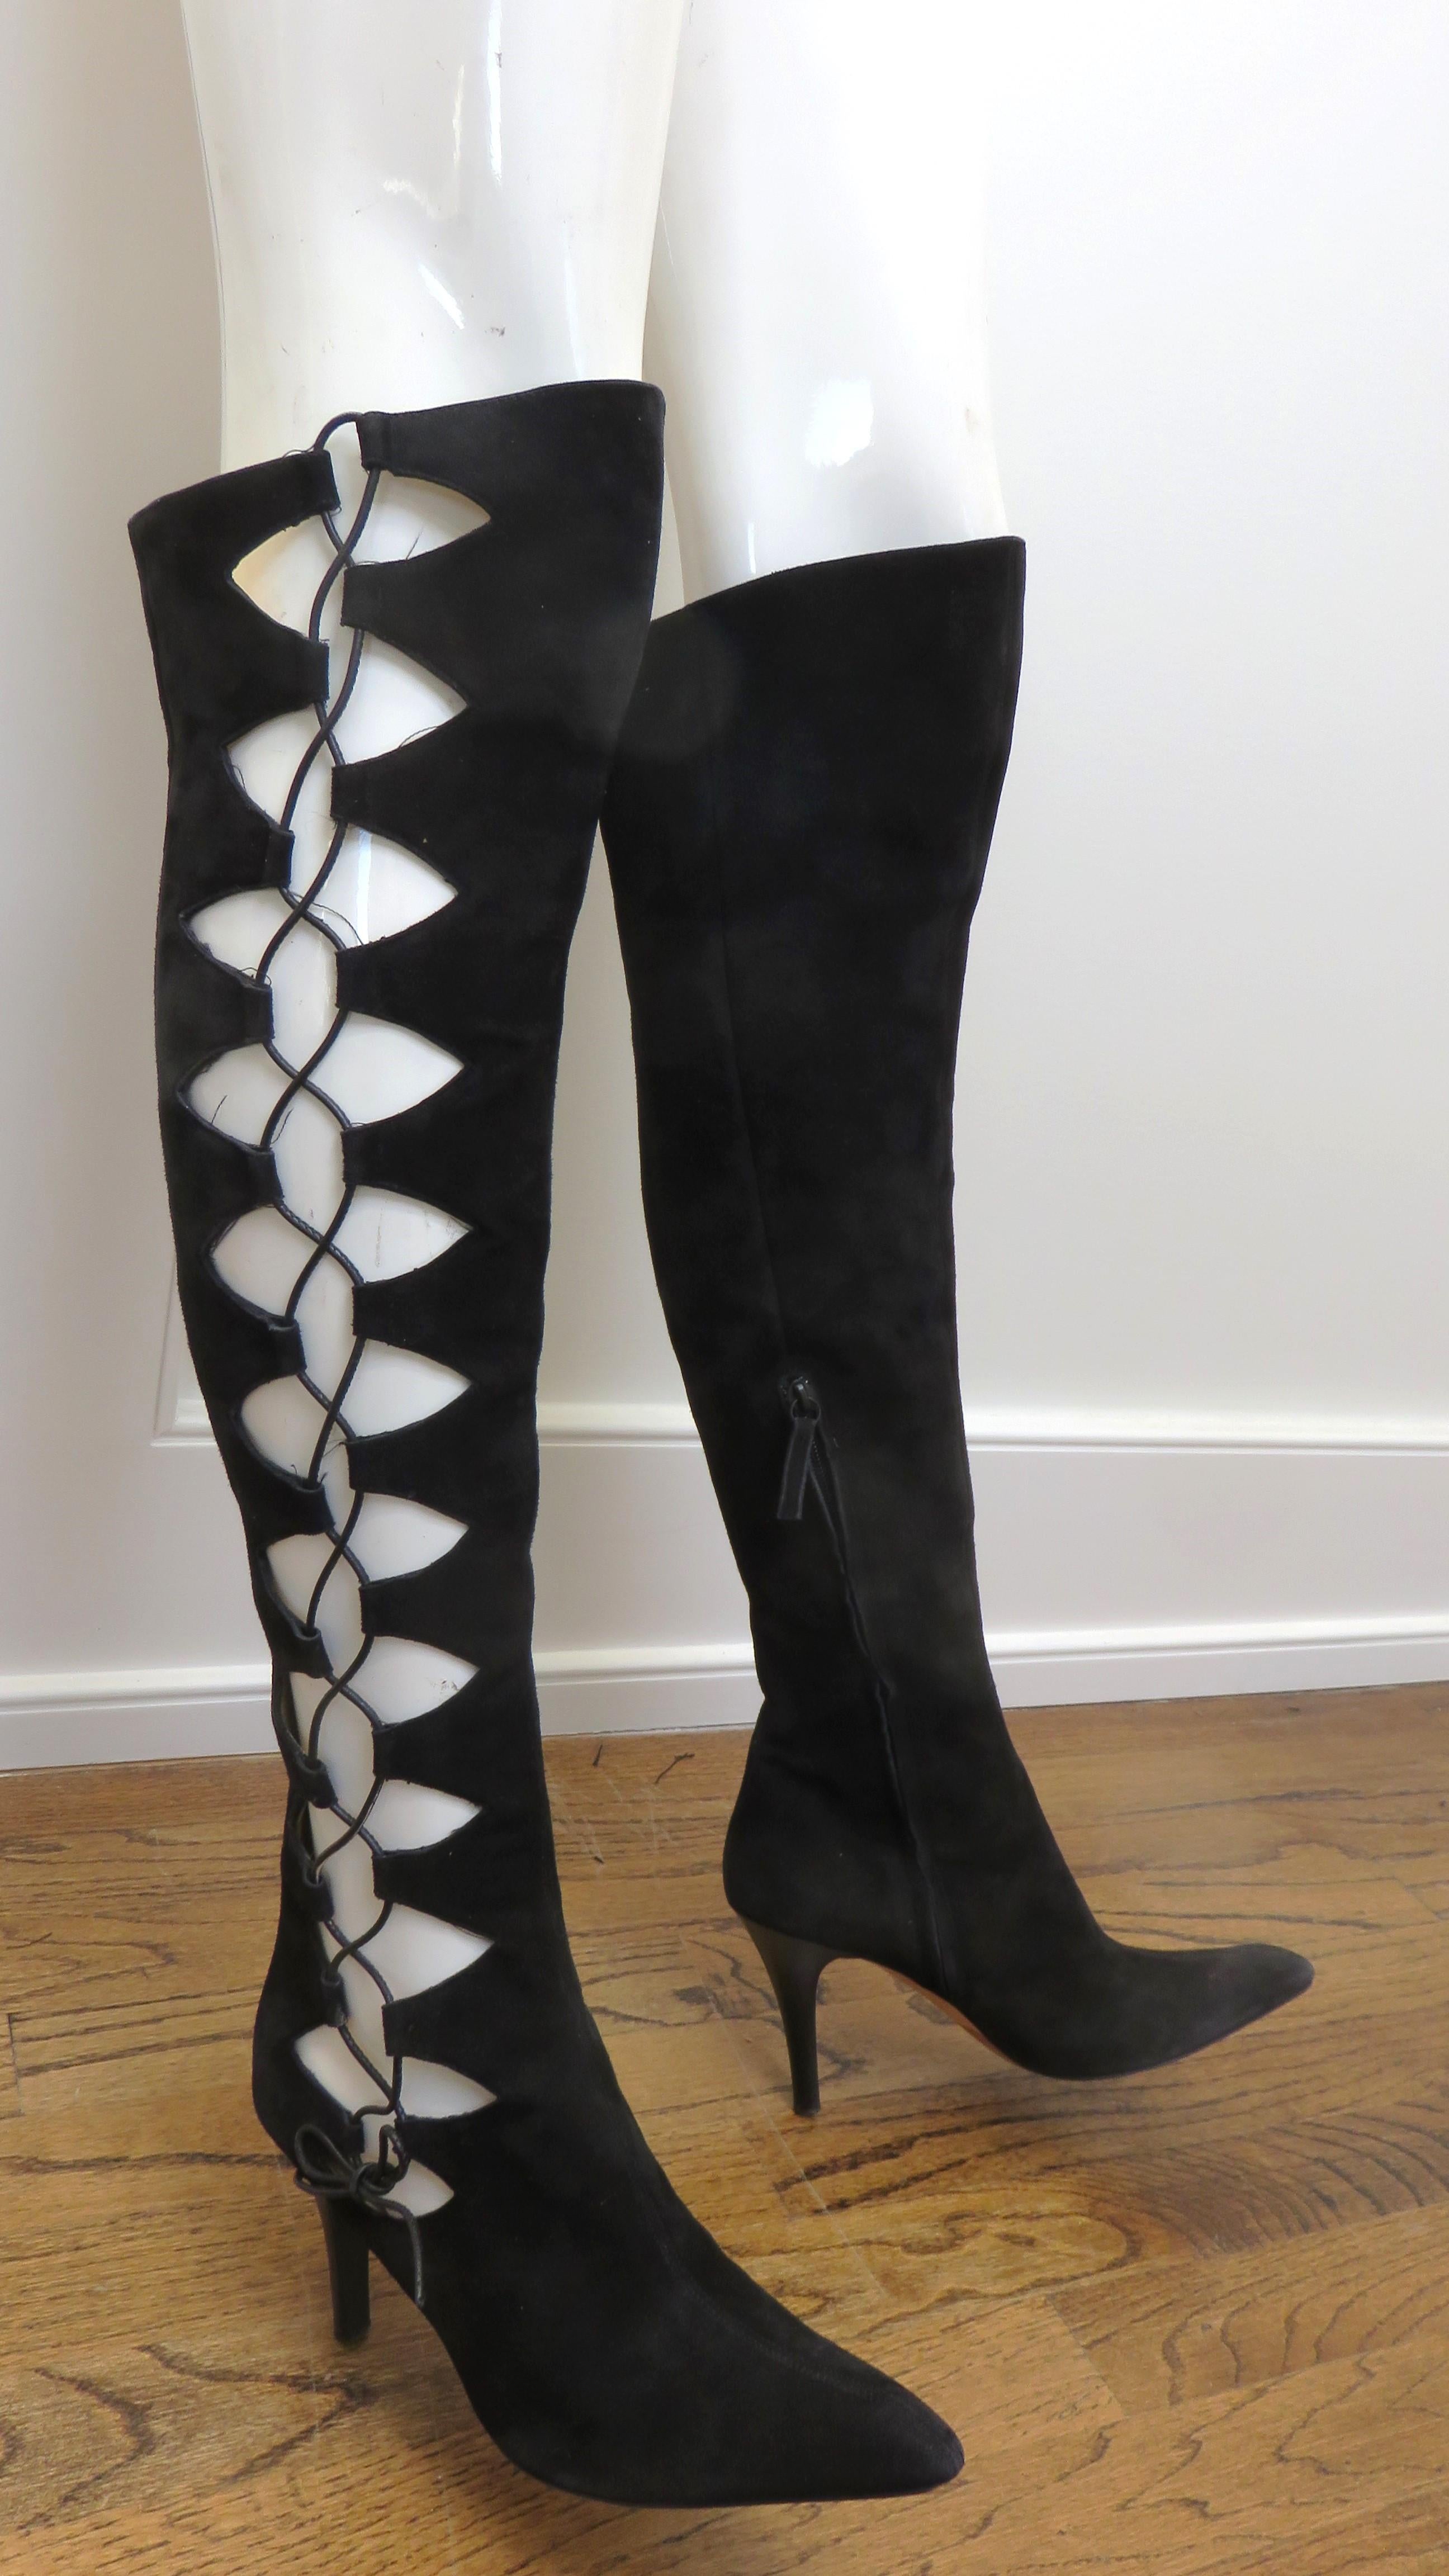 Une magnifique paire de bottes en daim noir de Giuseppe Zanotti.  Elles présentent des découpes élaborées et un laçage fonctionnel sur l'extérieur de chaque botte avec un cordon en cuir noir assorti aux talons de 4 pouces. Les bottes sont